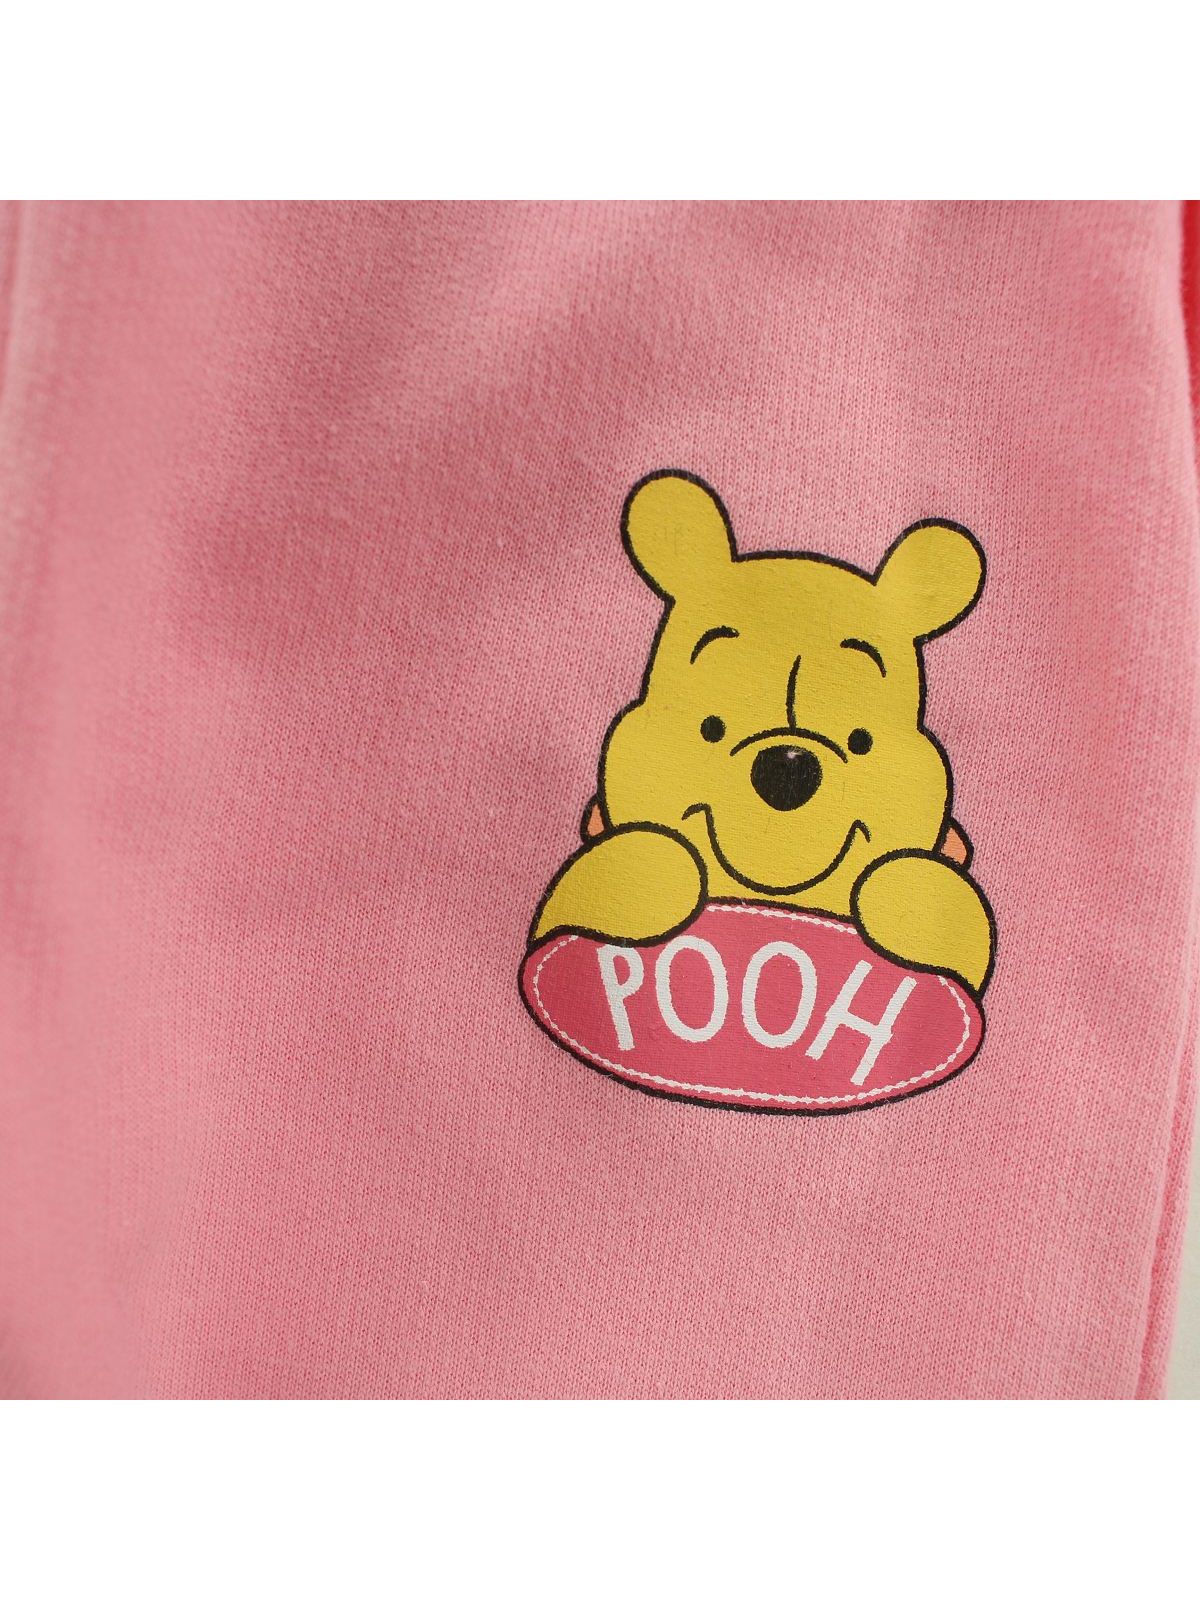 Conjunto de bebé Winnie Pooh.